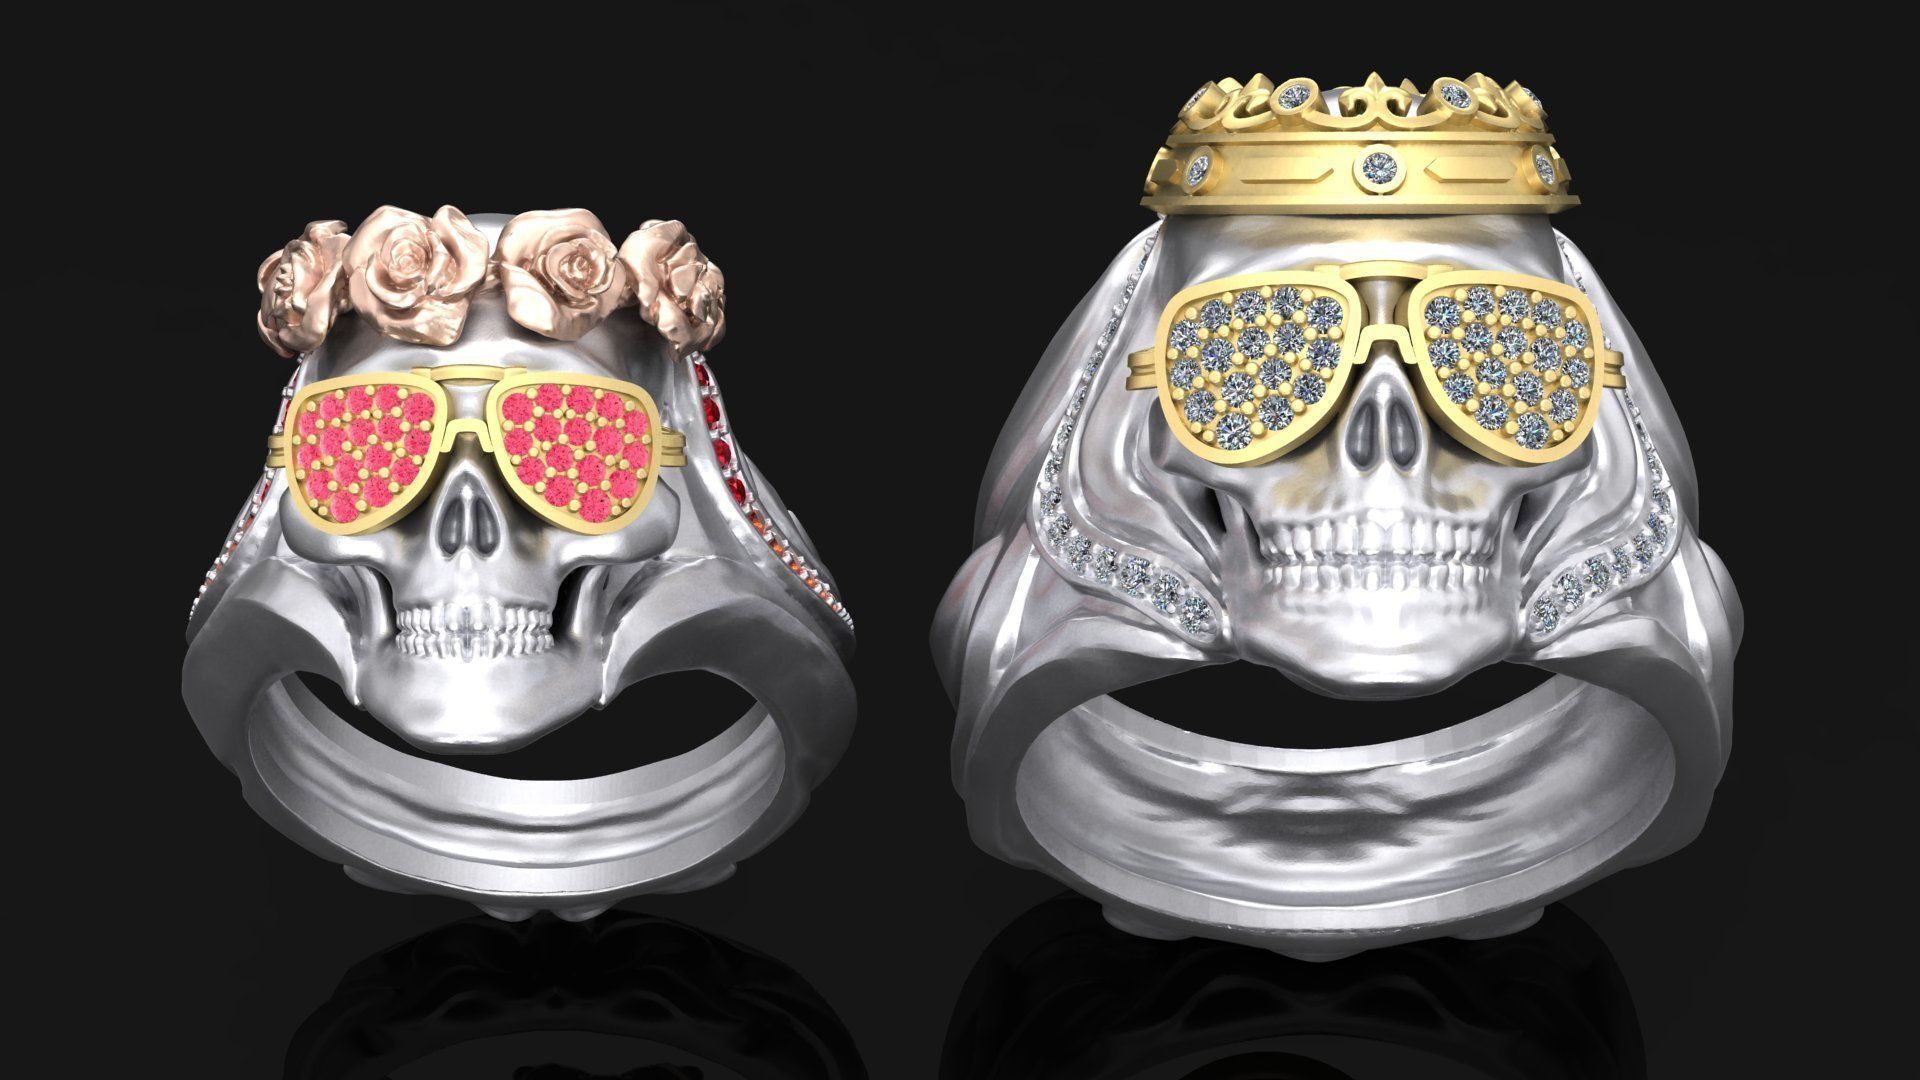 Imaginativo pueblo Orador Detalles de impresión 3D anillo Pareja calavera